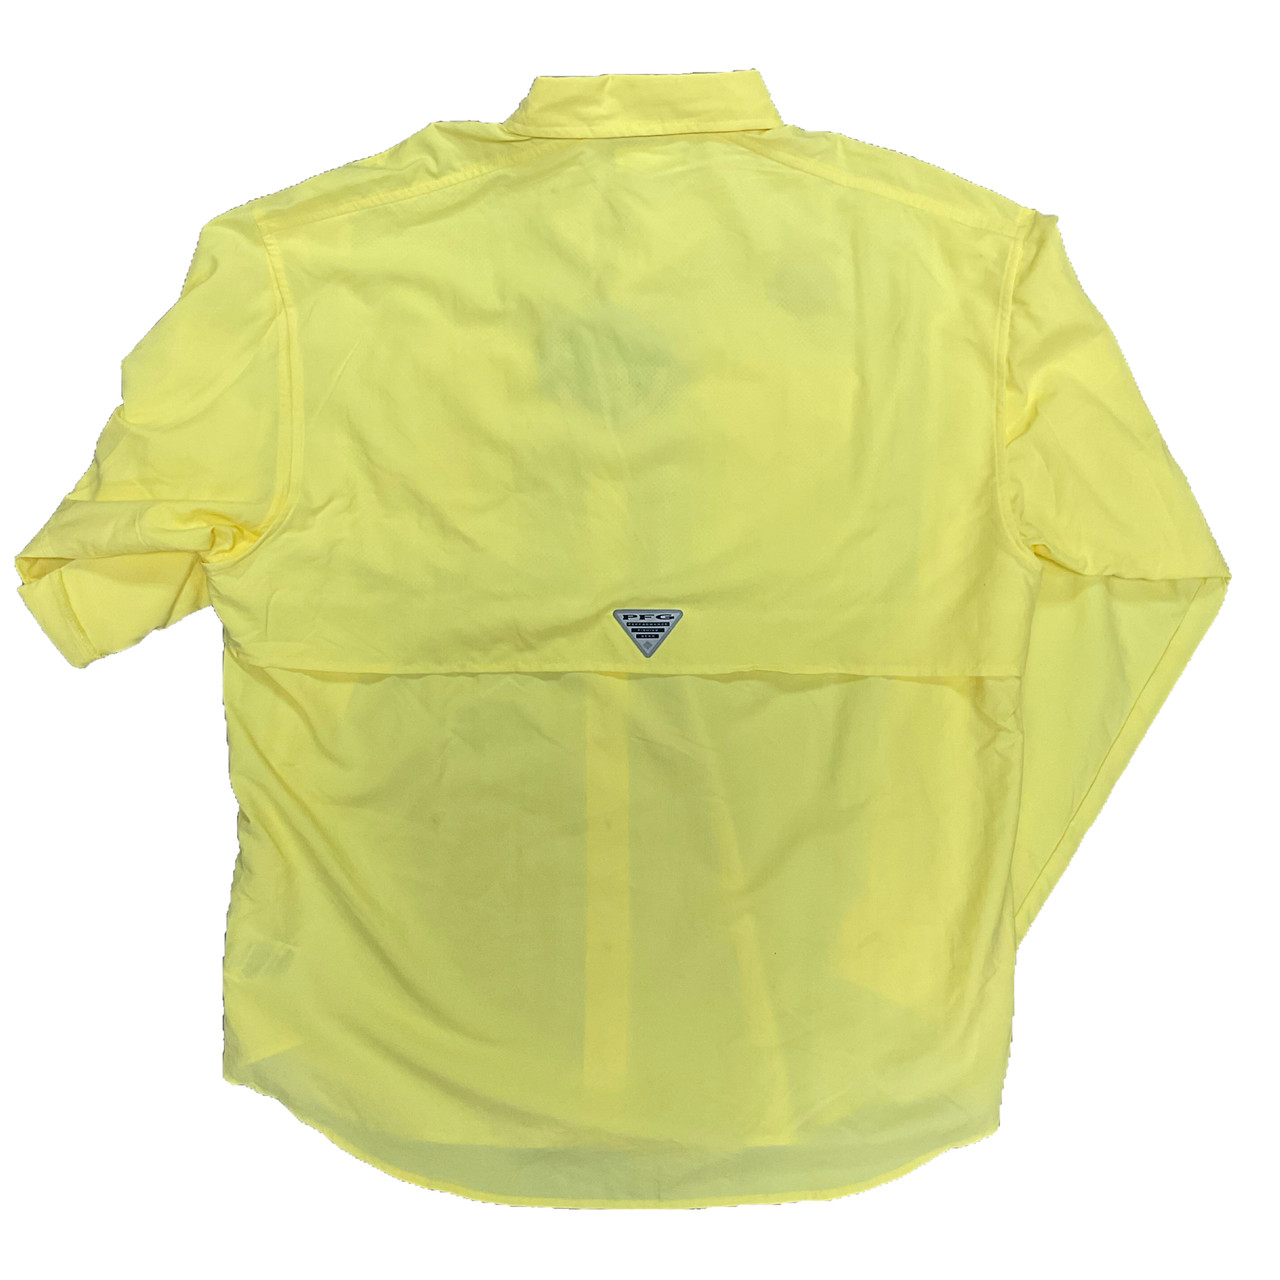 Fishing Shirt Ls 707 Columbia Sports Wear Yellow